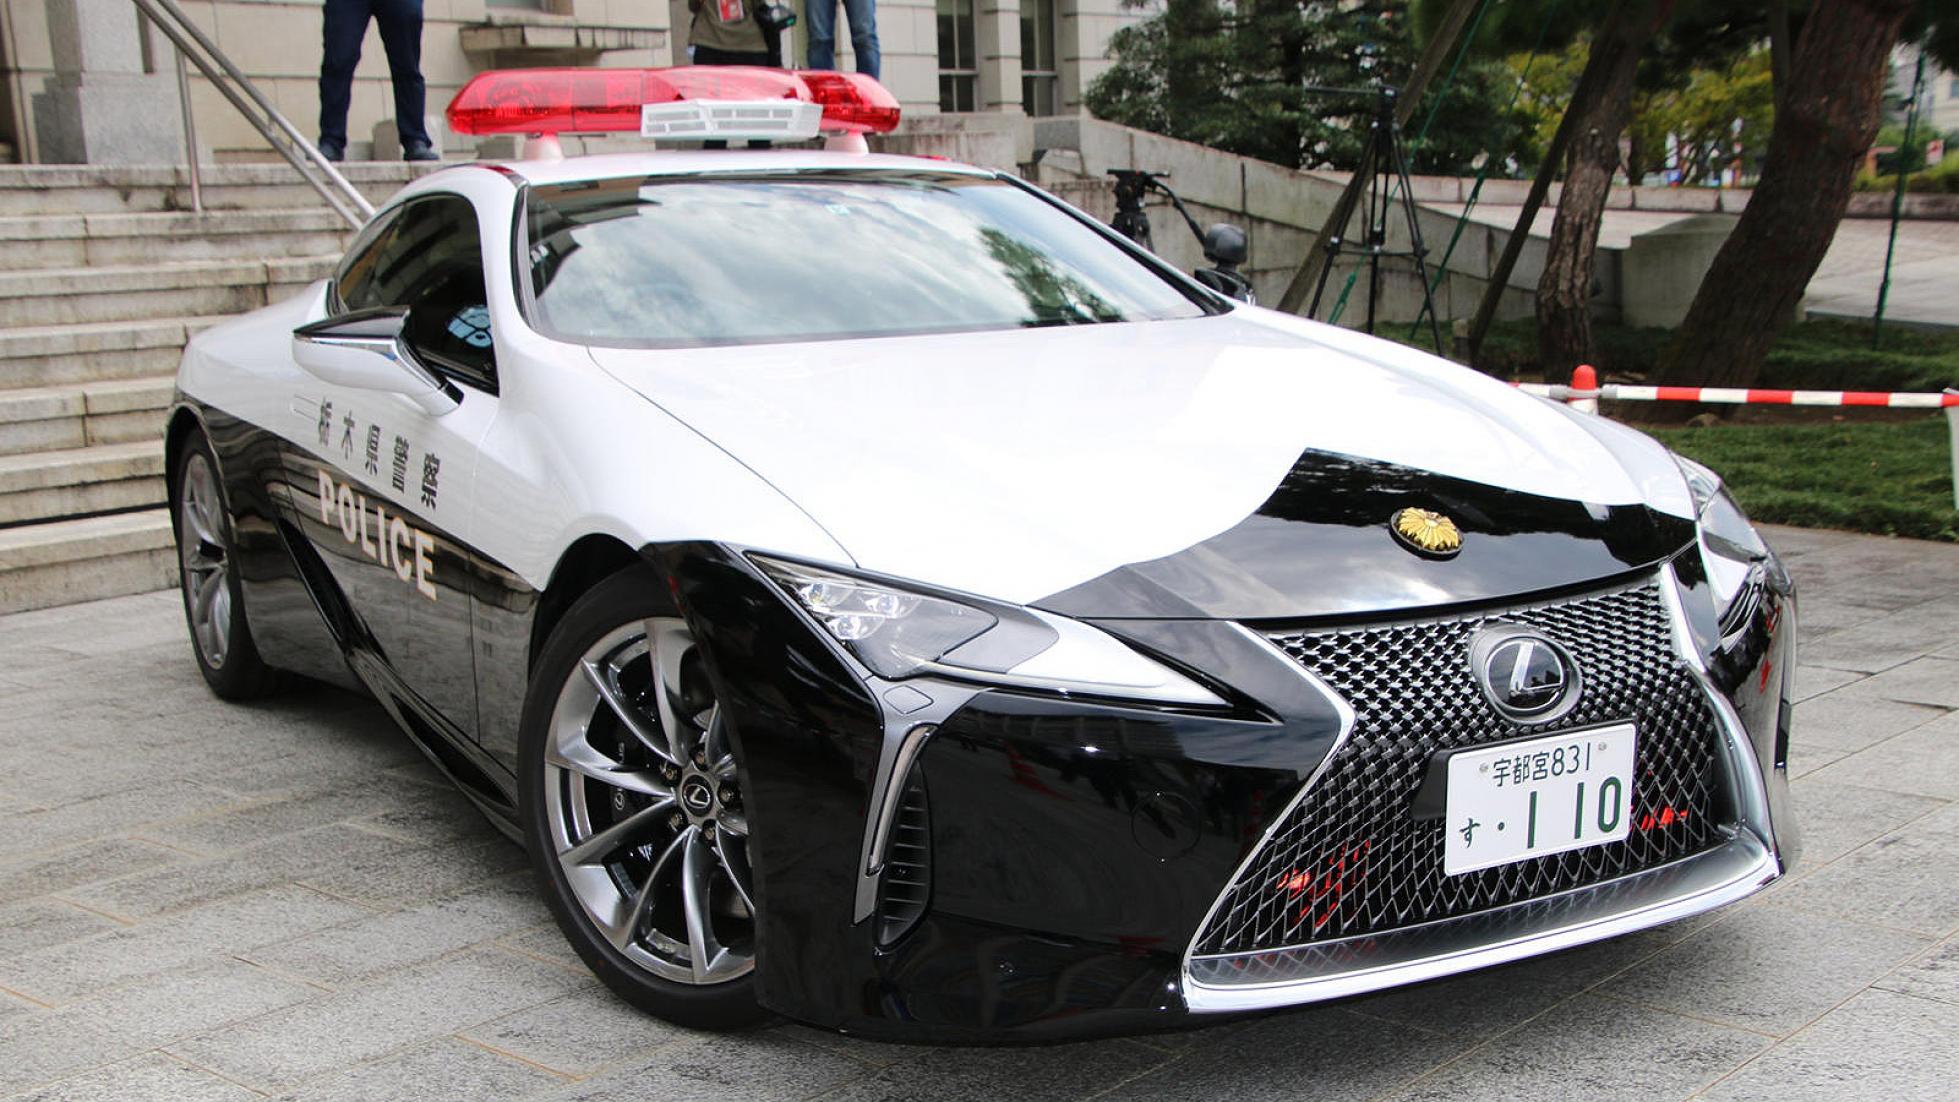 تويتر Top Gear على تويتر This Police Lexus Lc500 Will Round Up Japanese Speeders Japan S Police Force Gets Its Hands On A V8 Super Coupe In Uniform T Co Pxopxd5kqz T Co 8kvppueaph